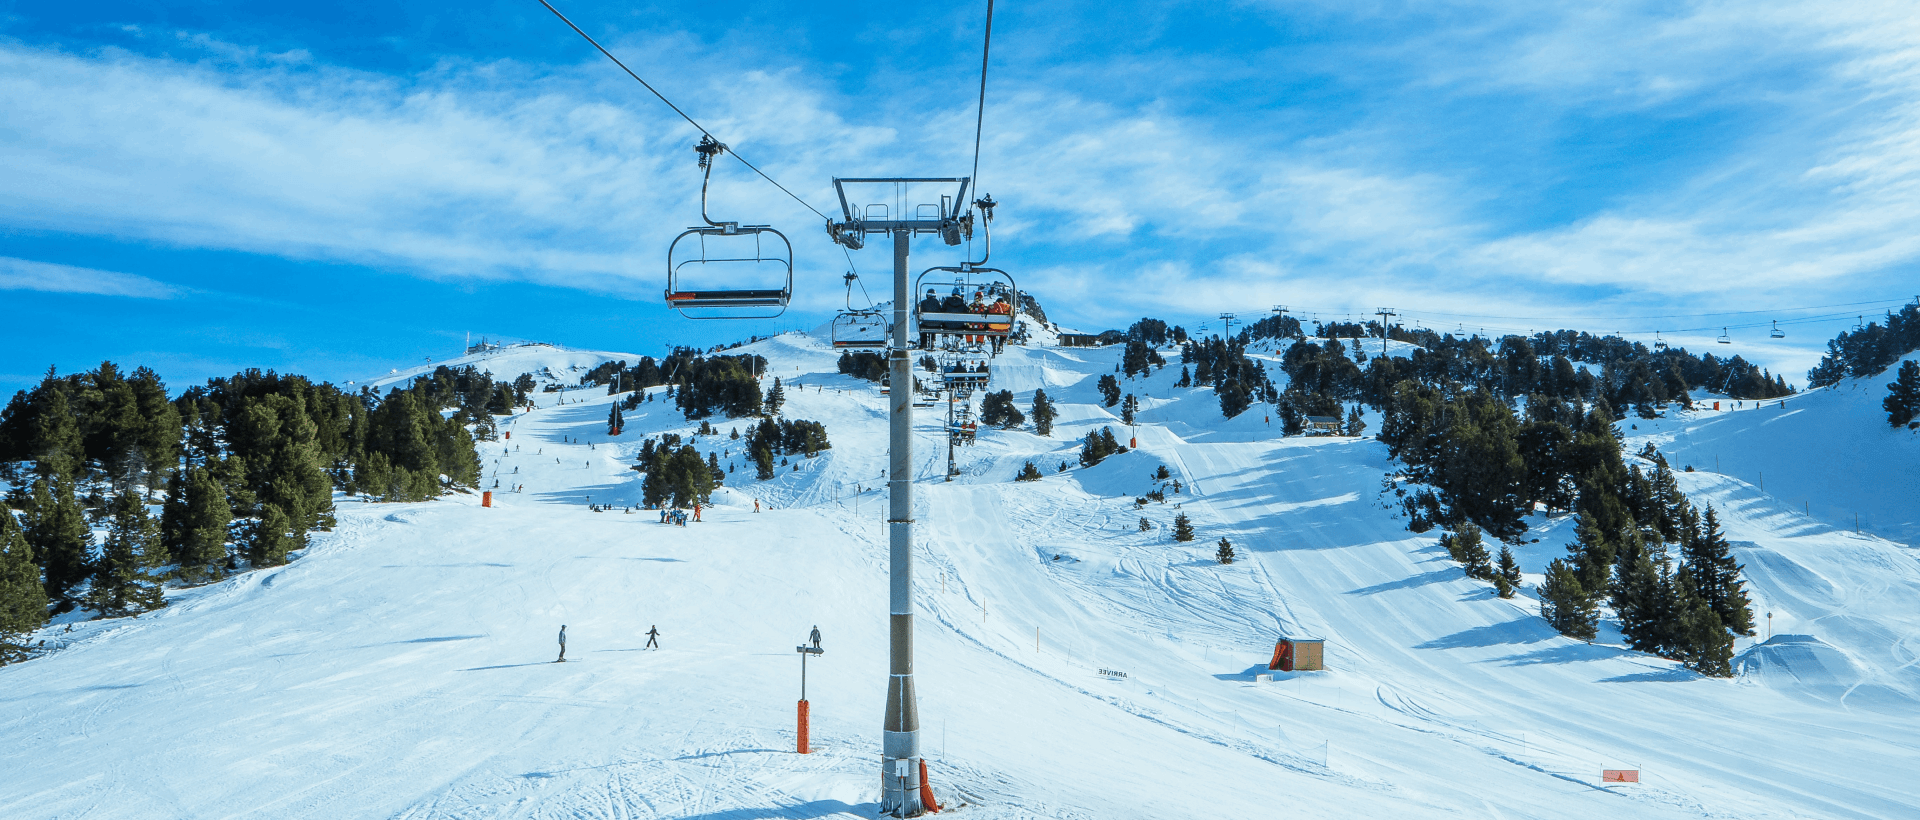 Ski Pisten und Ski Lift sinnbildlich für die verschiedenen Alternativen von Navigationen auf mobile Websites und Apps xeit